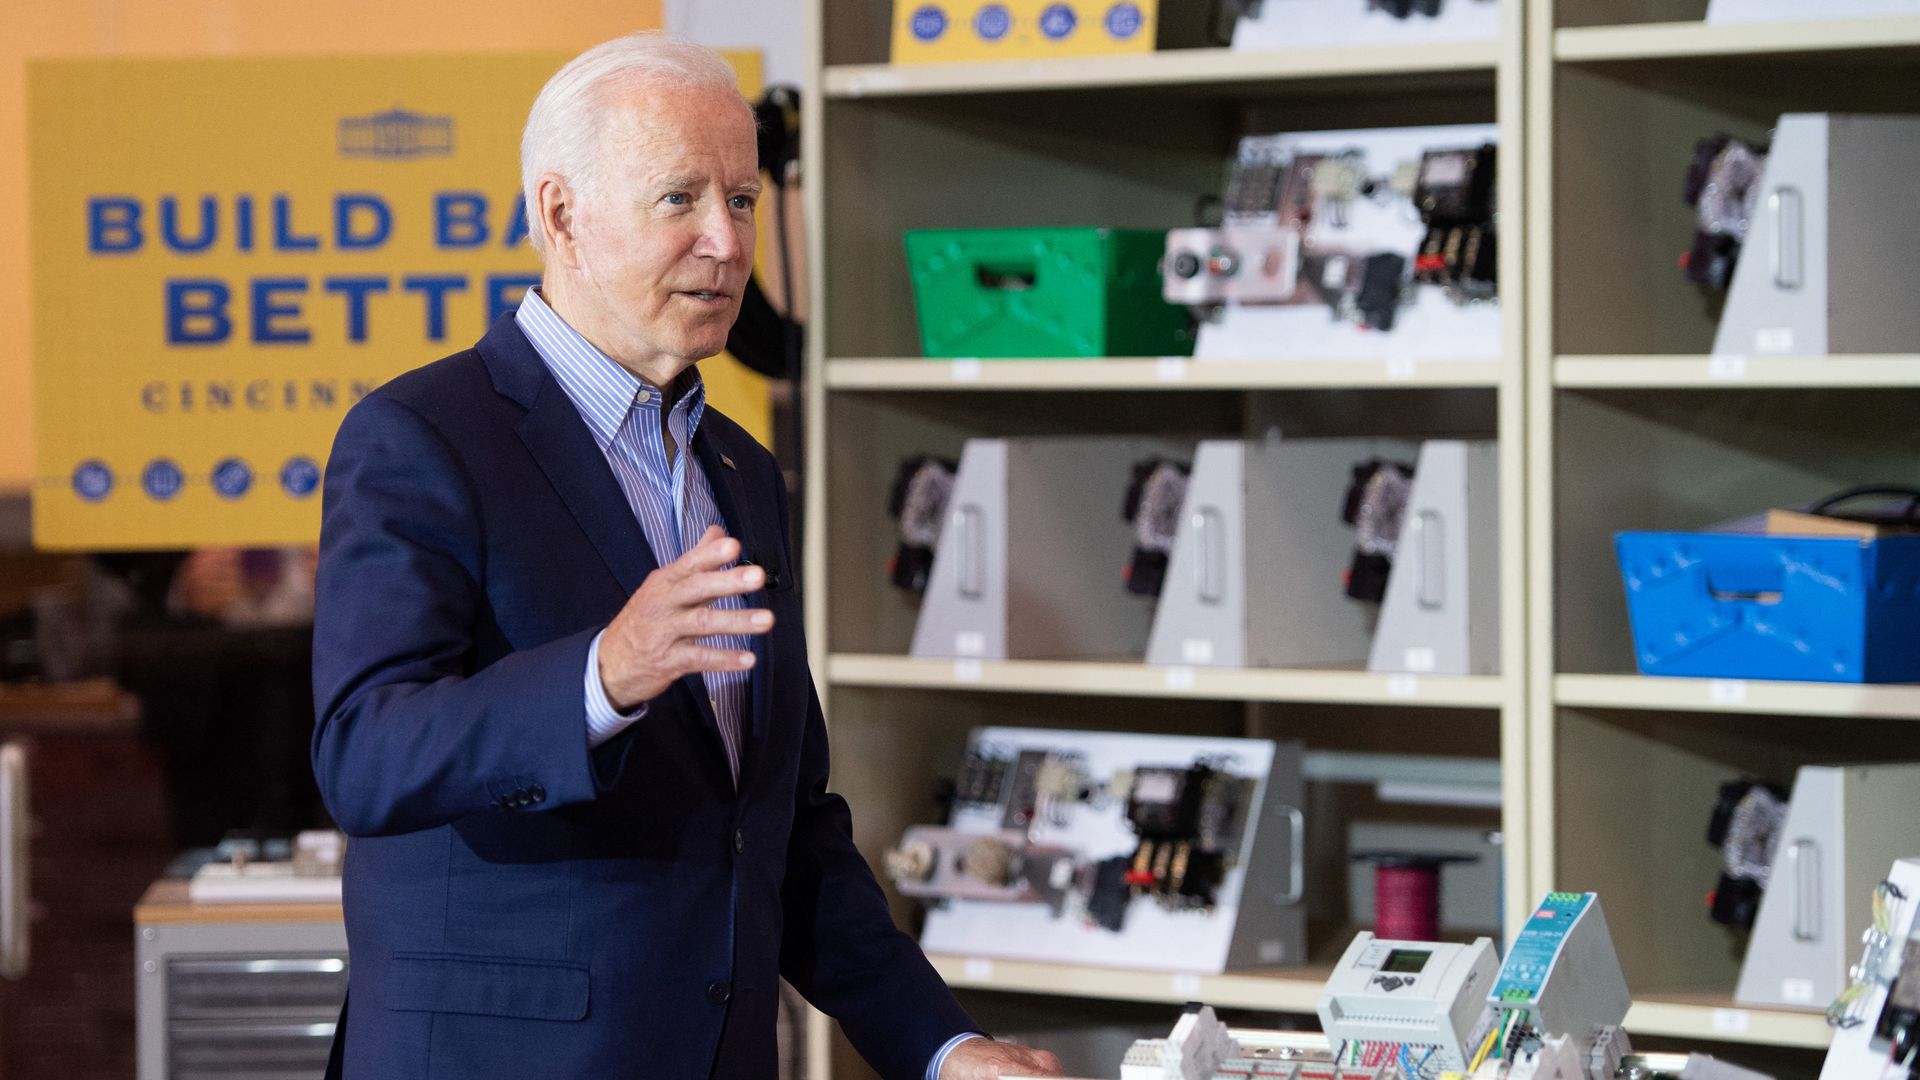 Photo of Joe Biden speaking at an electrical training center